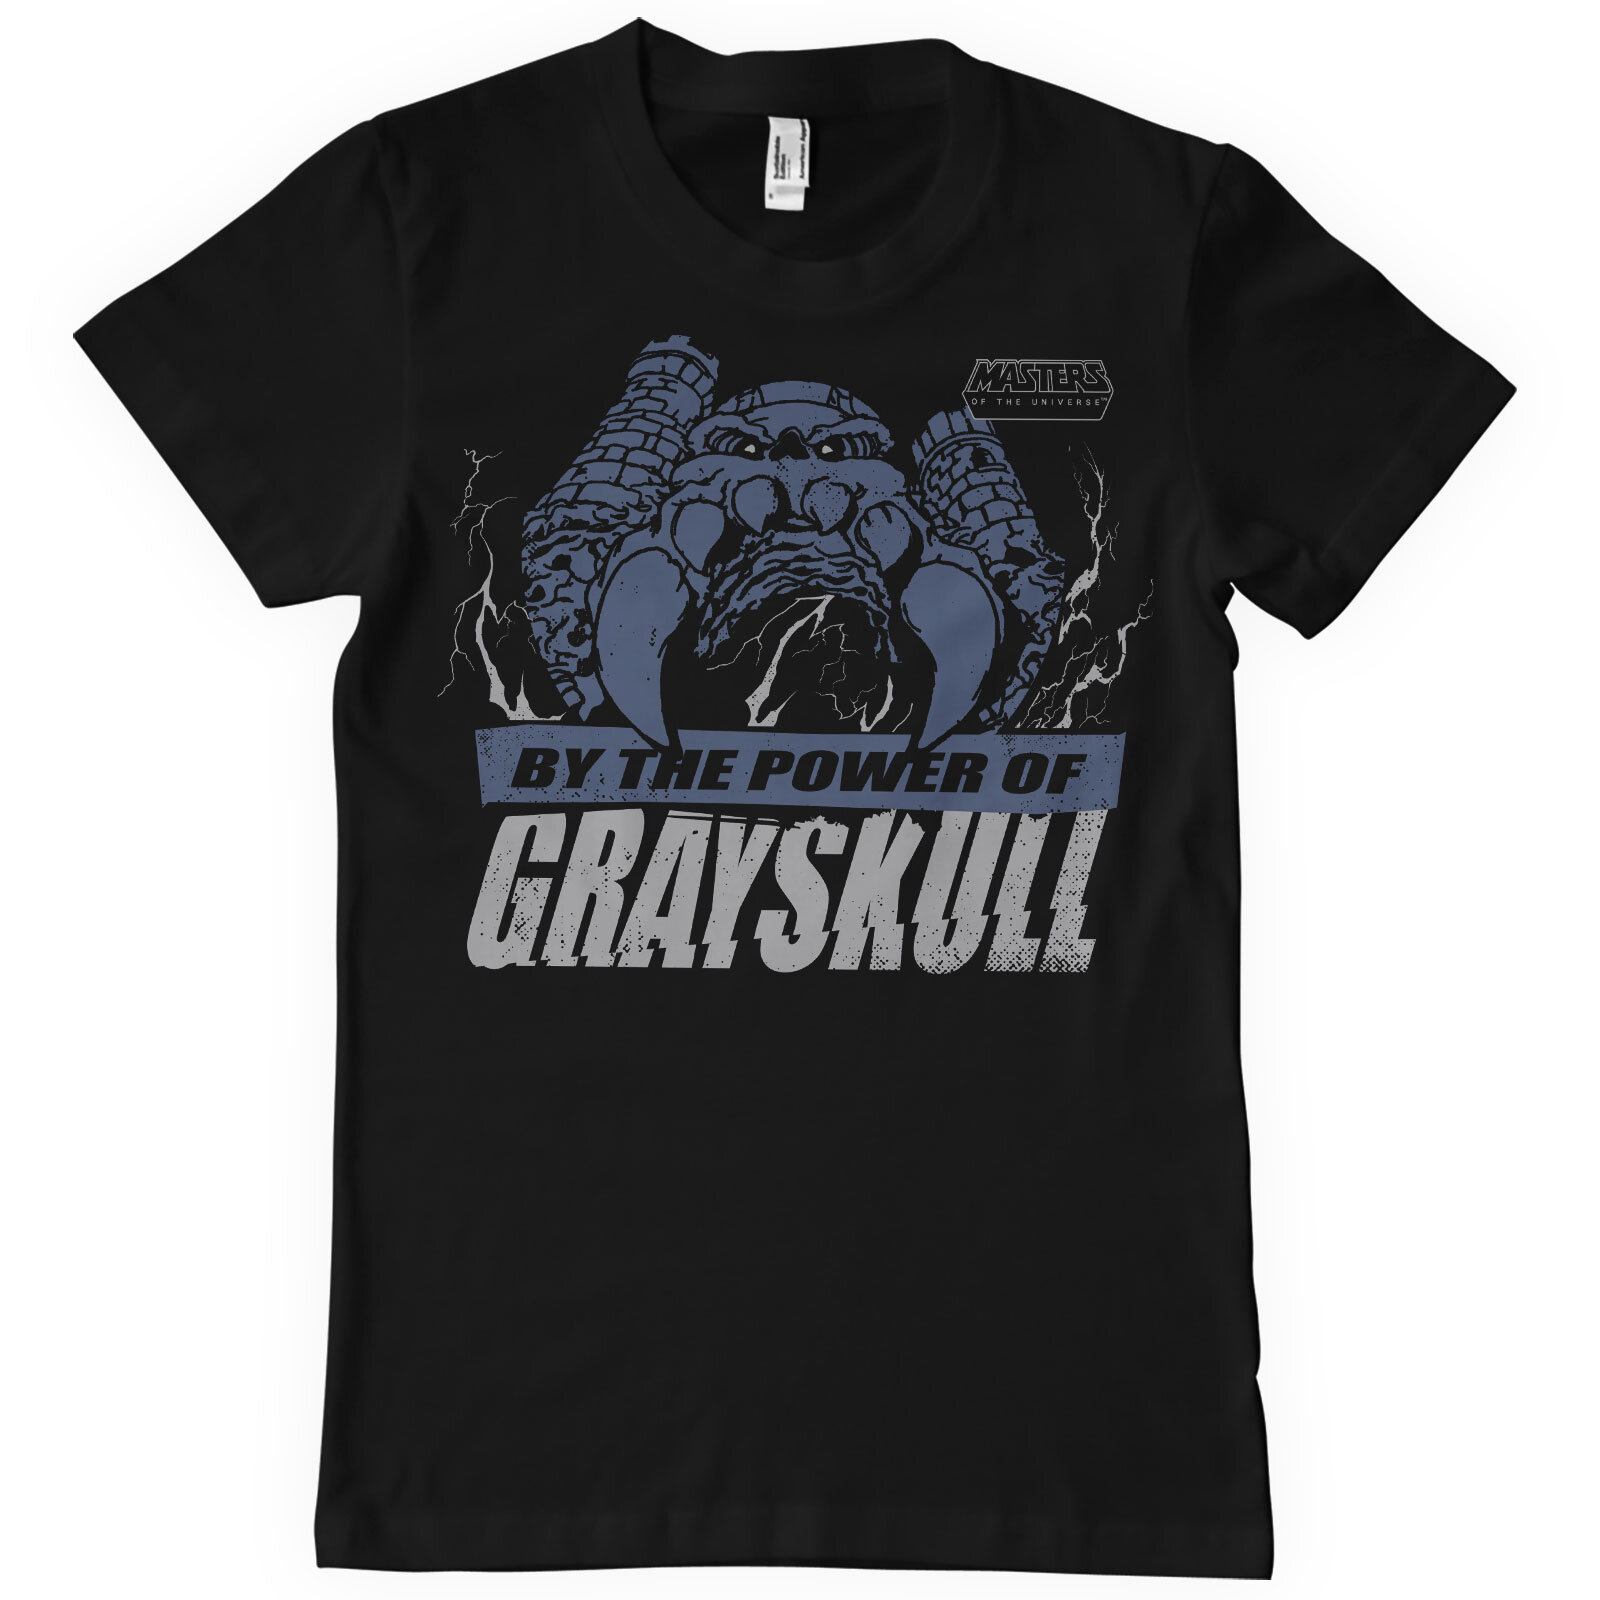 Grayskull Caste T-Shirt